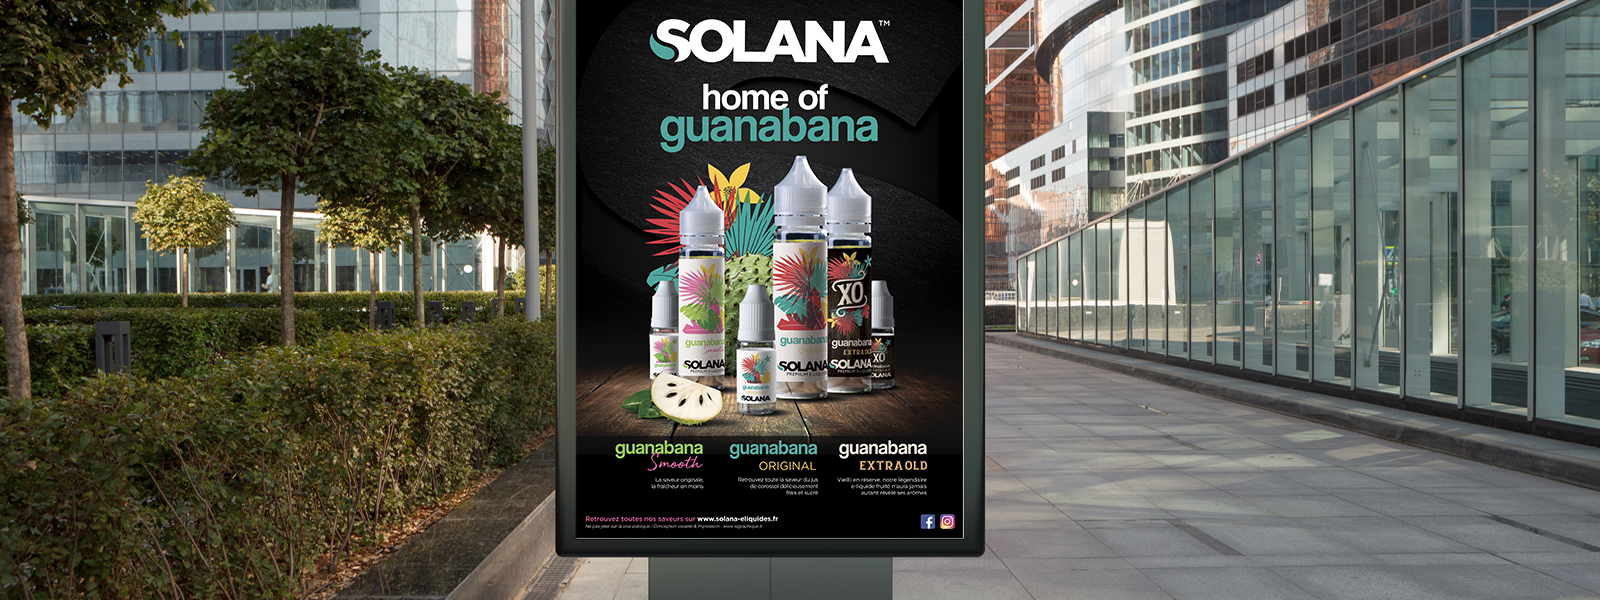 Affiches publicitaires Solana